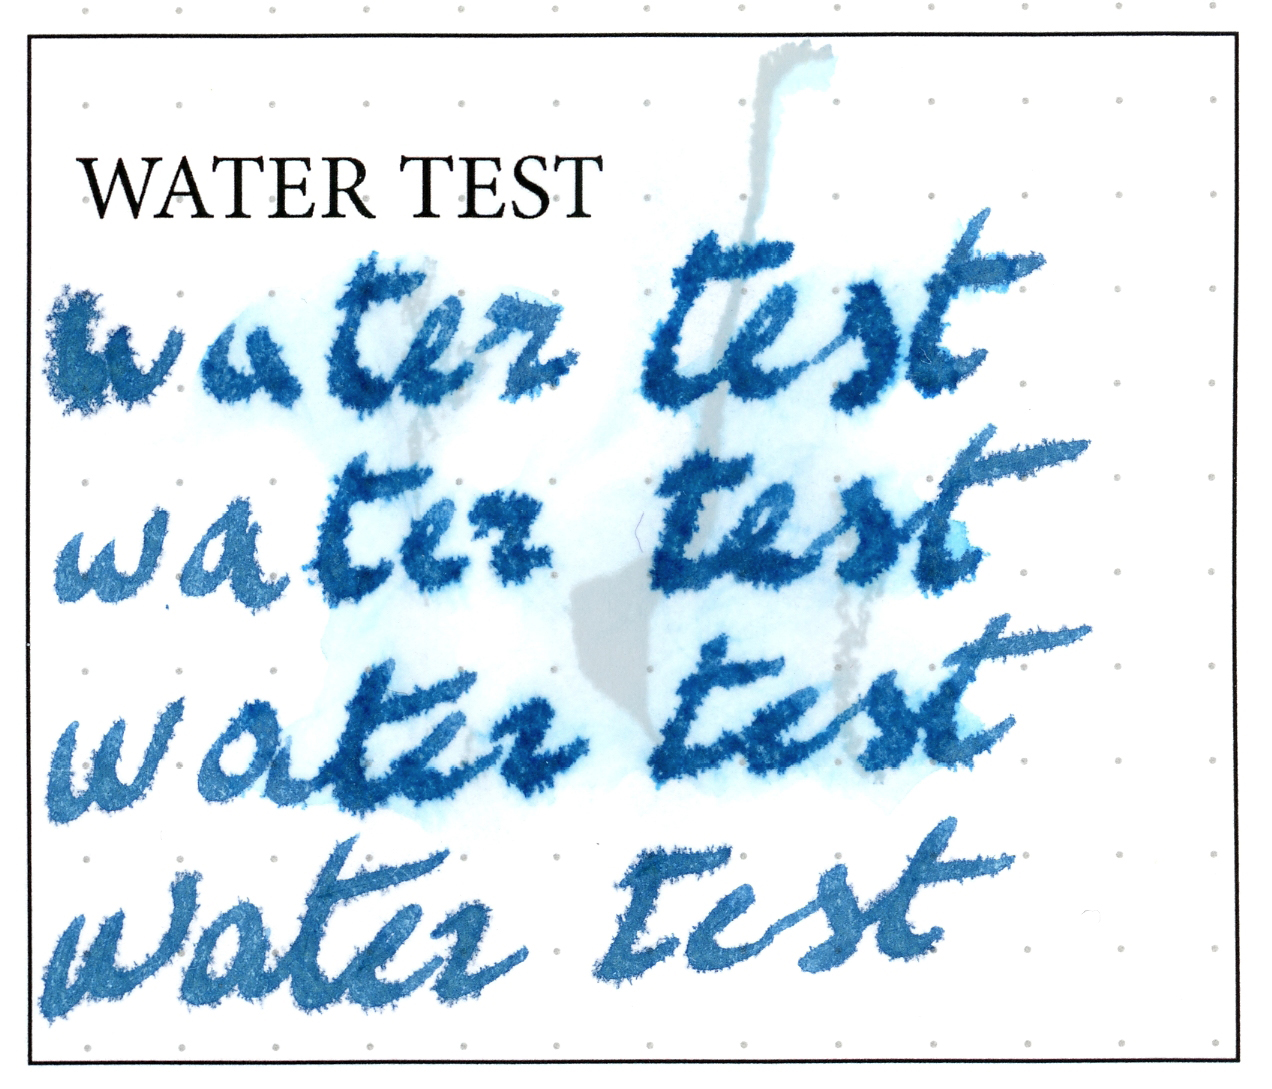 Noodler's Bad Blue Heron Water Test